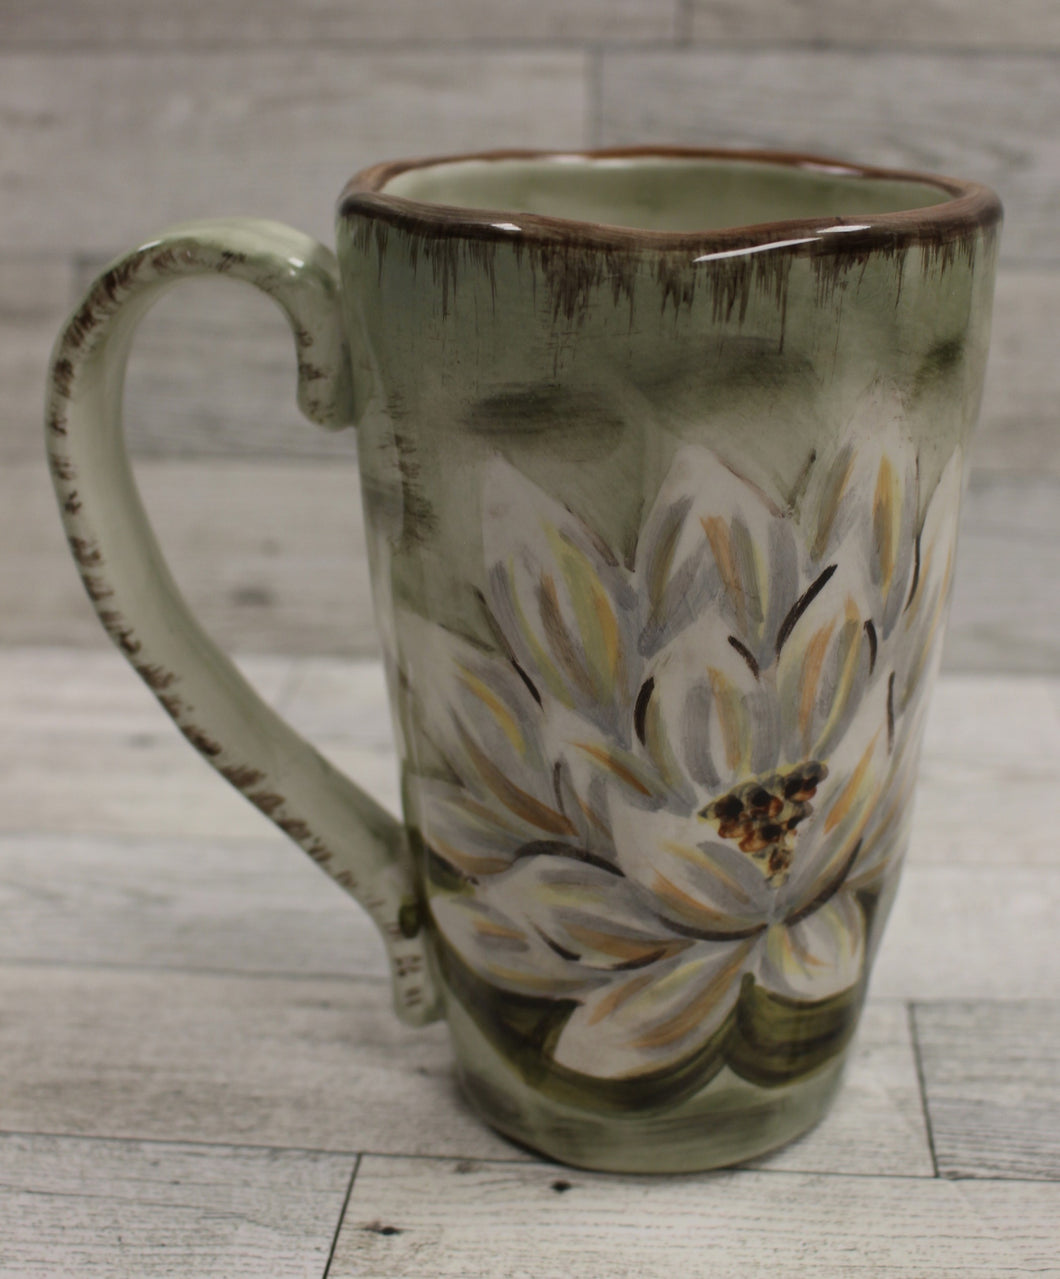 Tabletops Gallery Waterloo Handpainted Coffee Cup Mug - Floral - Used